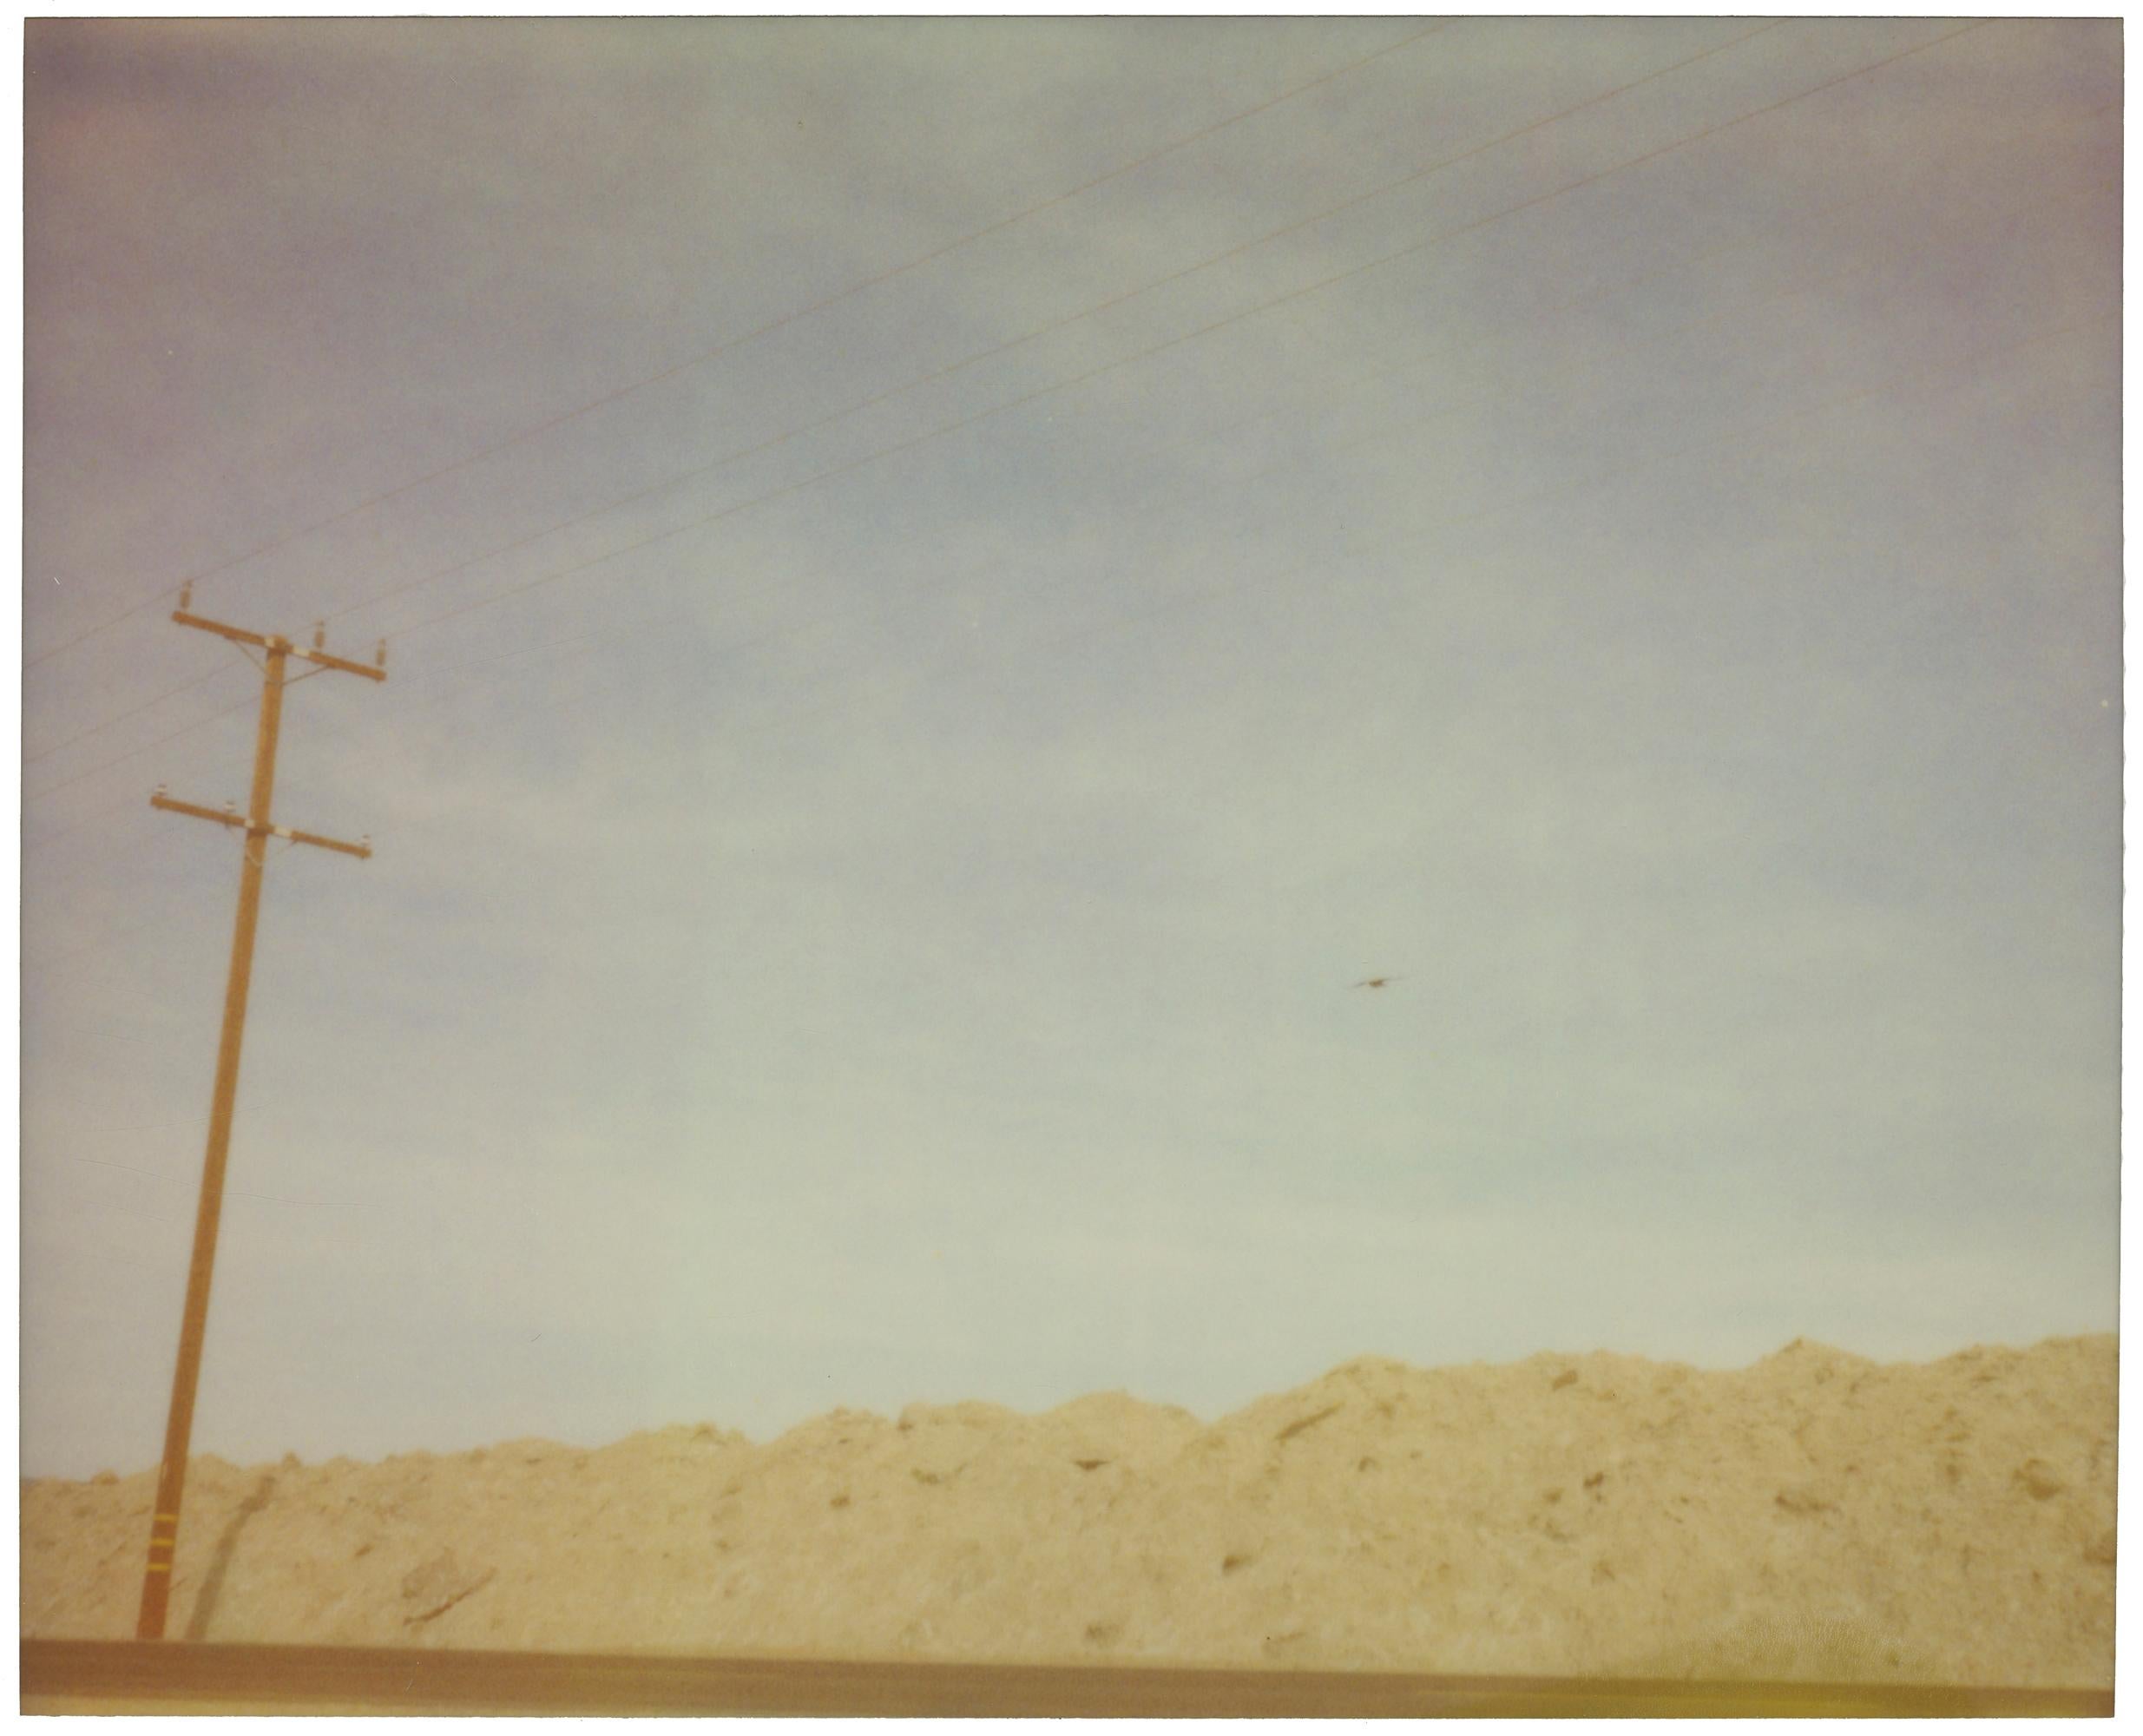 Train Tracks (Kalifornien Badlanden) – Zeitgenössisch, Polaroid, Landschaft